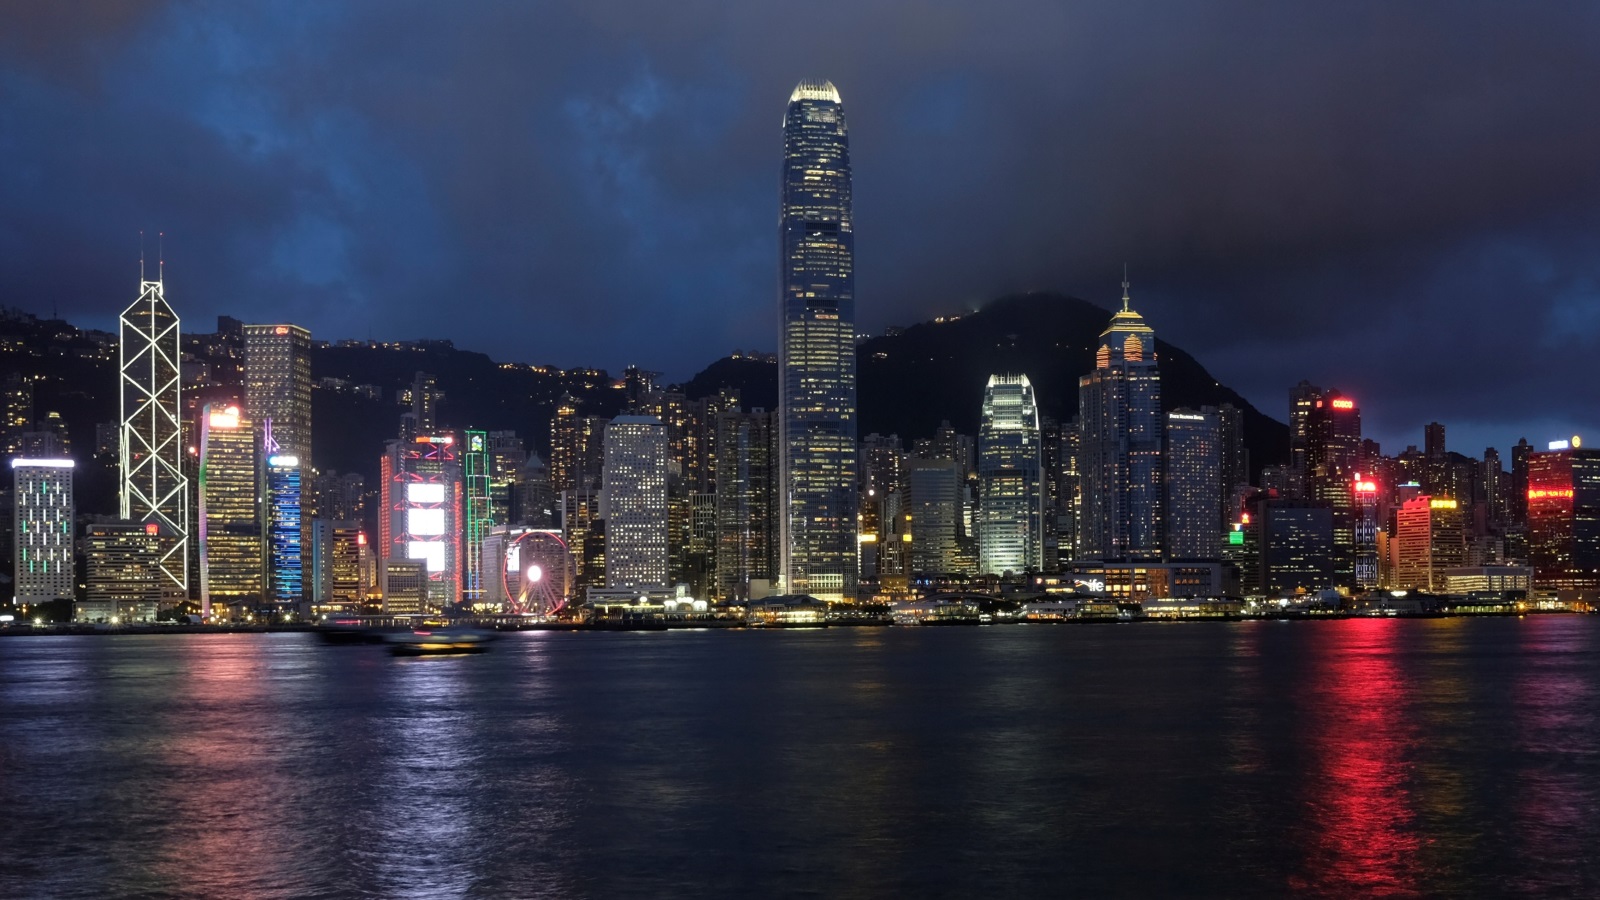 كانت هونغ كونغ بالنسبة للصين ببساطة مدينة مرتبطة ببر الصين الرئيسي وتخضع في النهاية لسيطرة الحزب الشيوعي لكنها في الوقت نفسه متكاملة بشكل تام مع الاقتصاد العالمي